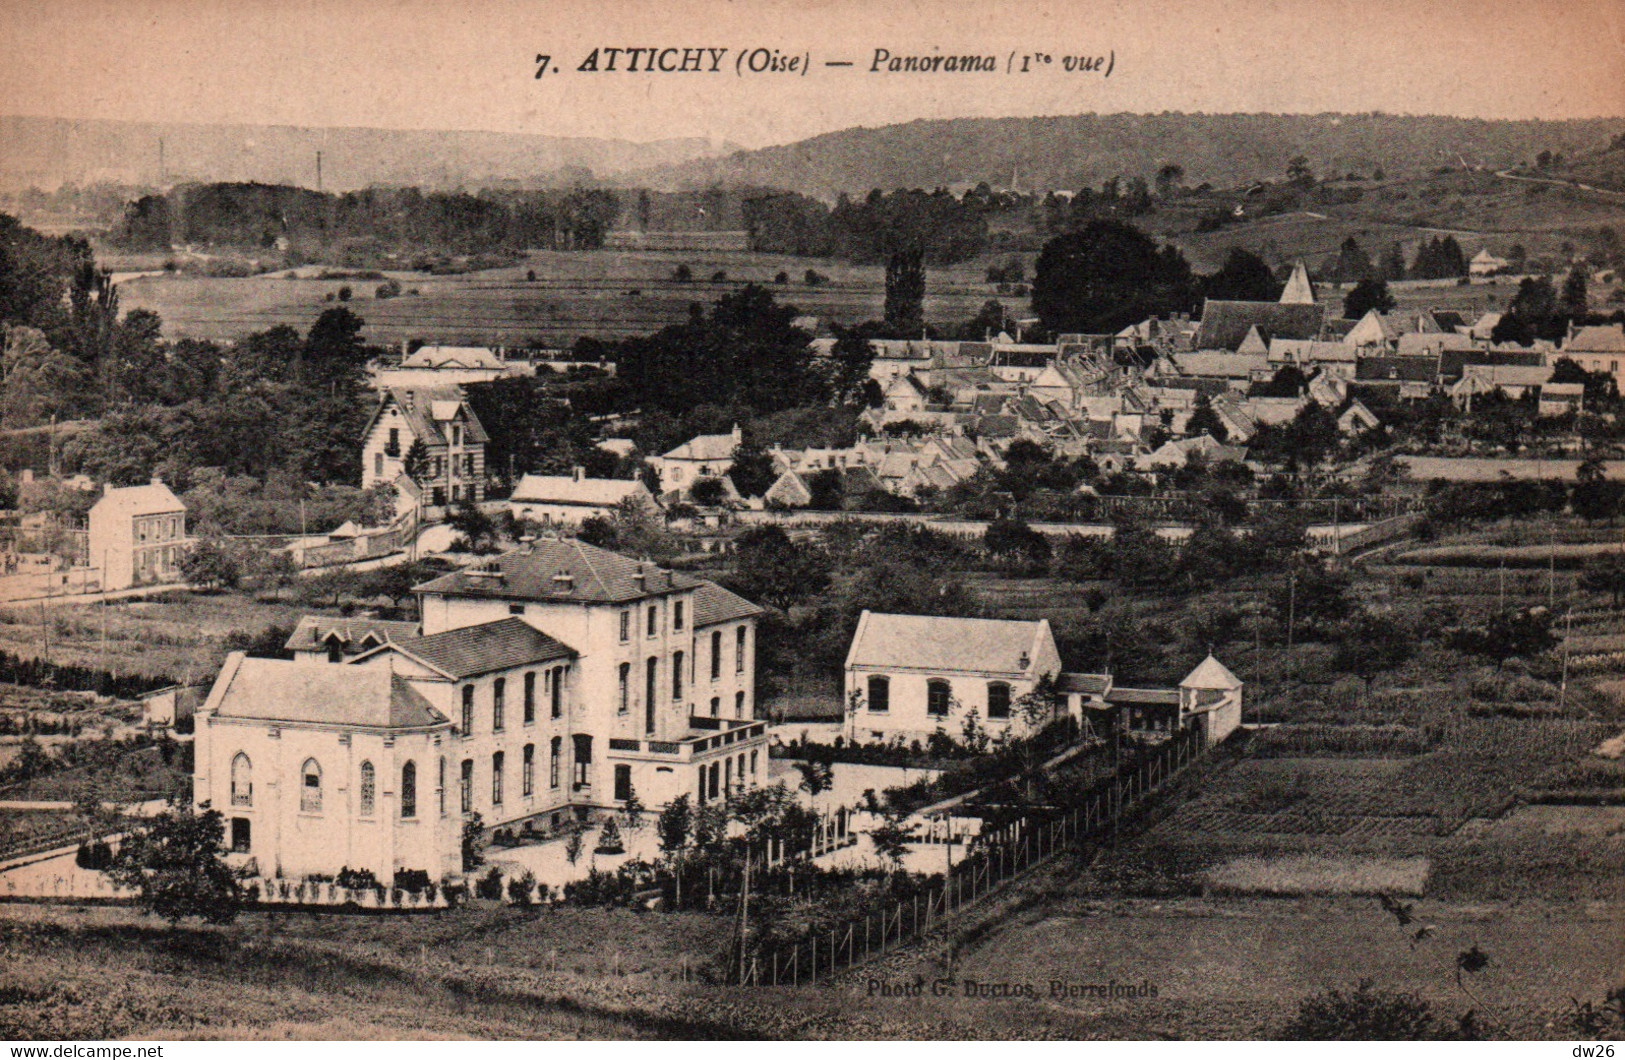 Attichy (Oise) Panorama Sur L'Hôpital Et La Chapelle, 1ère Vue - Photo G. Duclos - Carte N° 7 Non Circulée - Attichy